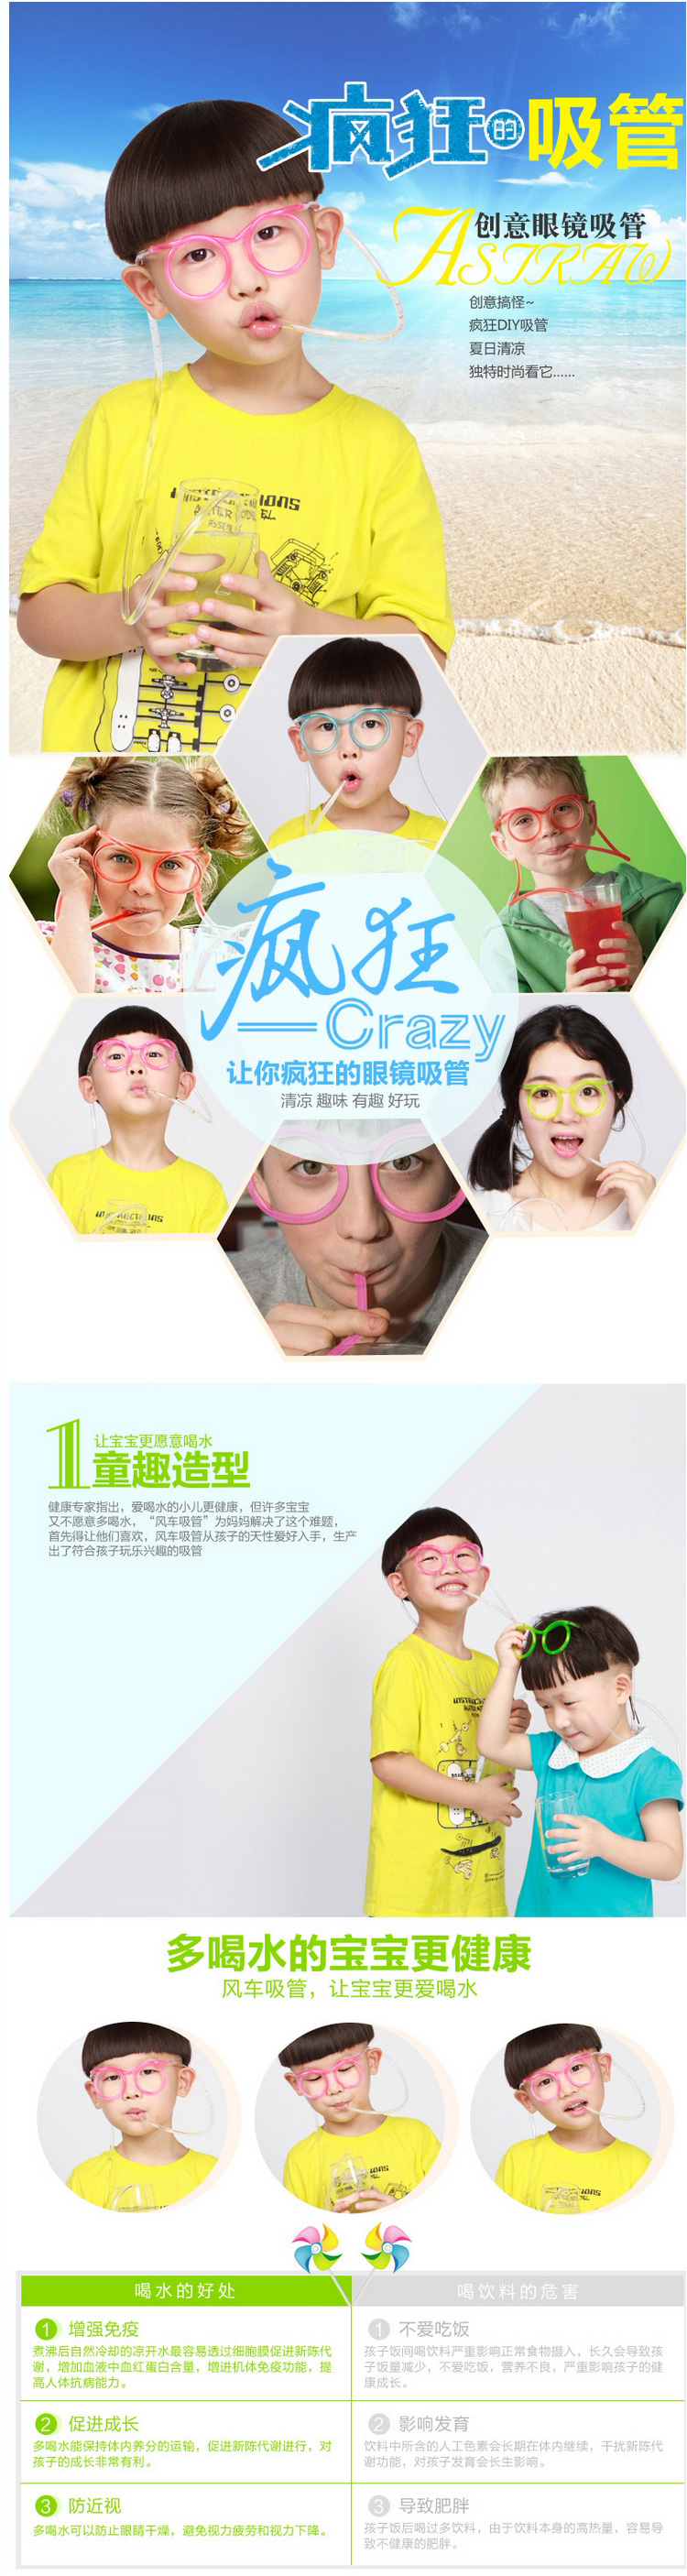 2559 韓國新款可愛卡通瘋狂DIY吸管創意趣味搞怪眼鏡吸管 批發22g